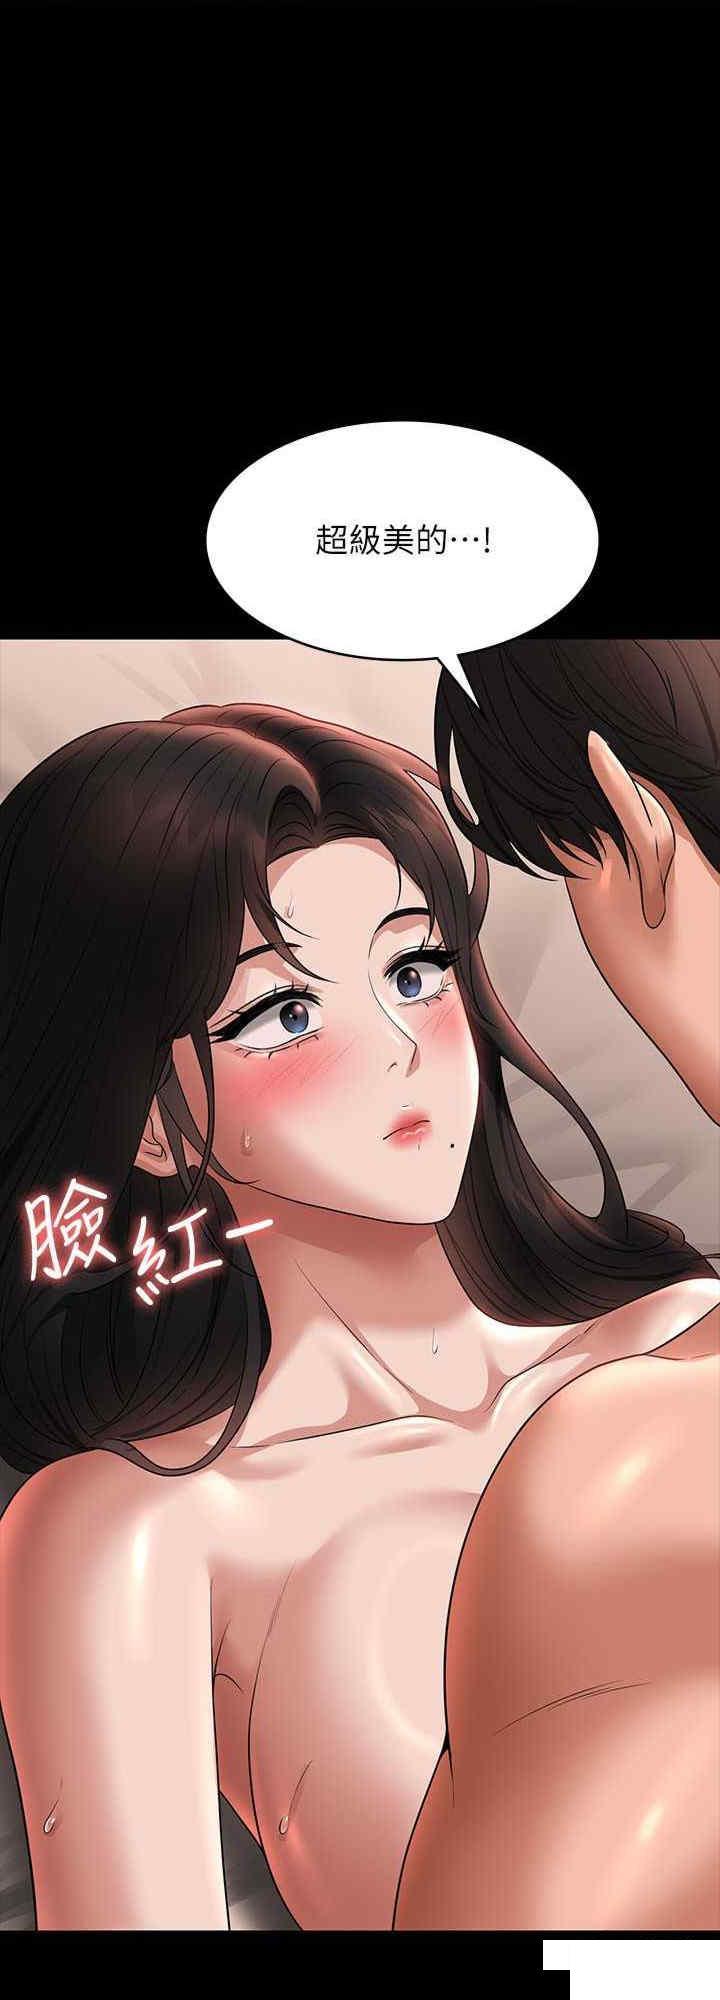 韩国污漫画 超級公務員 第94话 被狠狠抽插过的淫荡痕迹 8